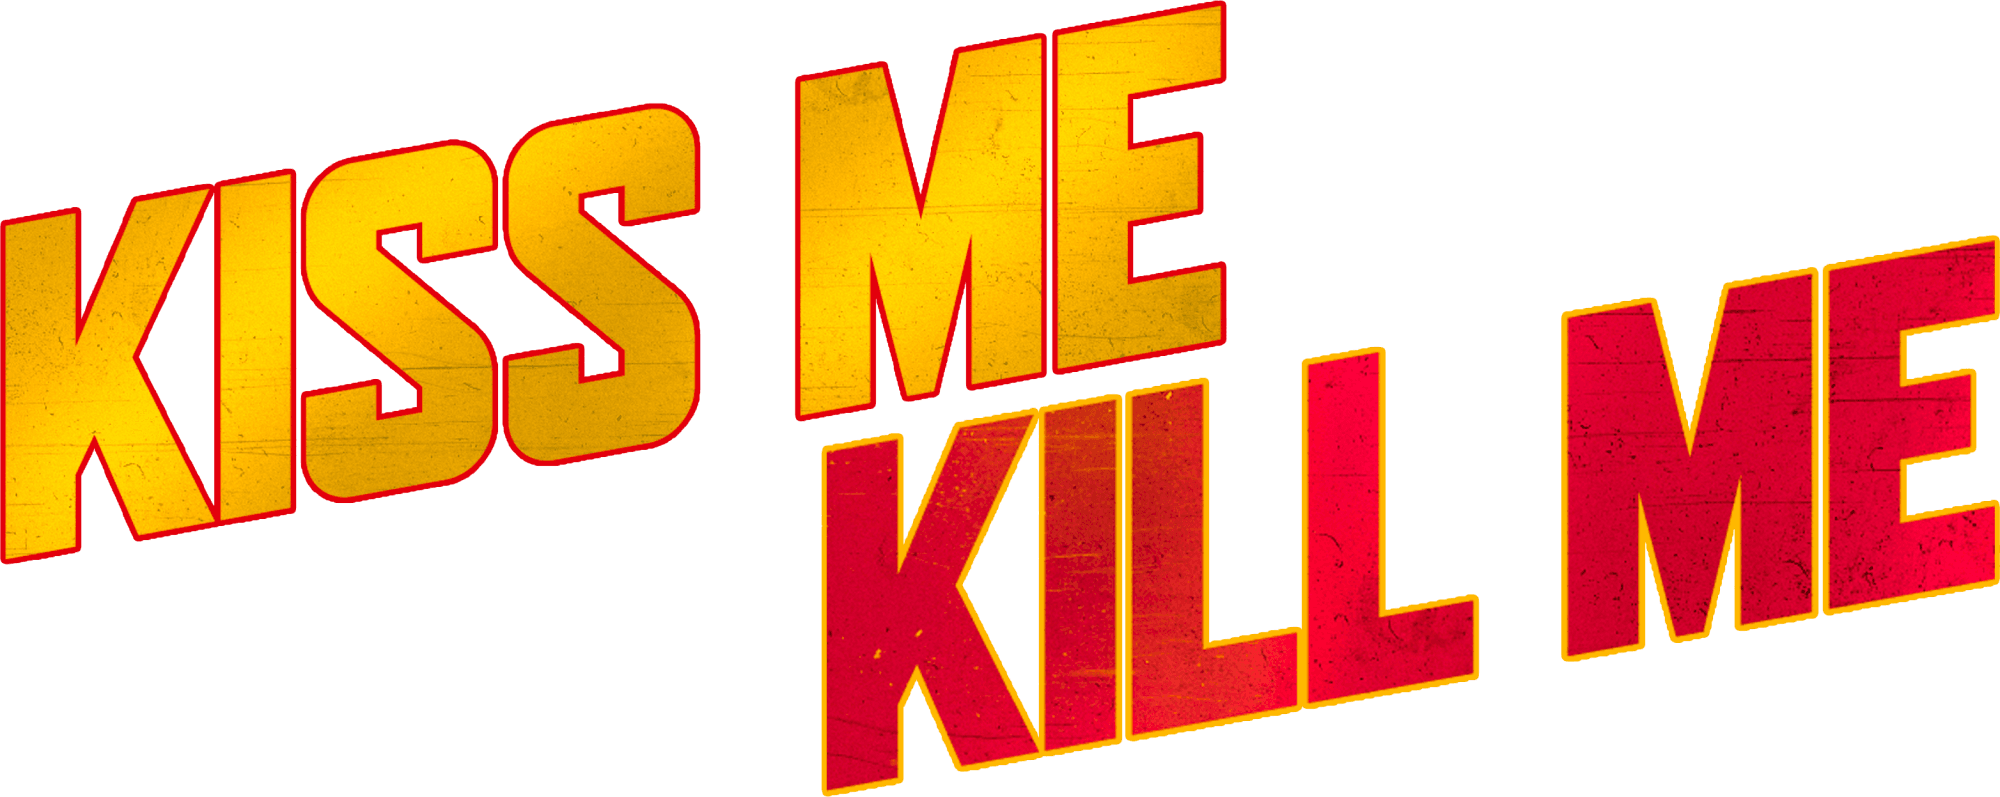 Kiss Me, Kill Me logo